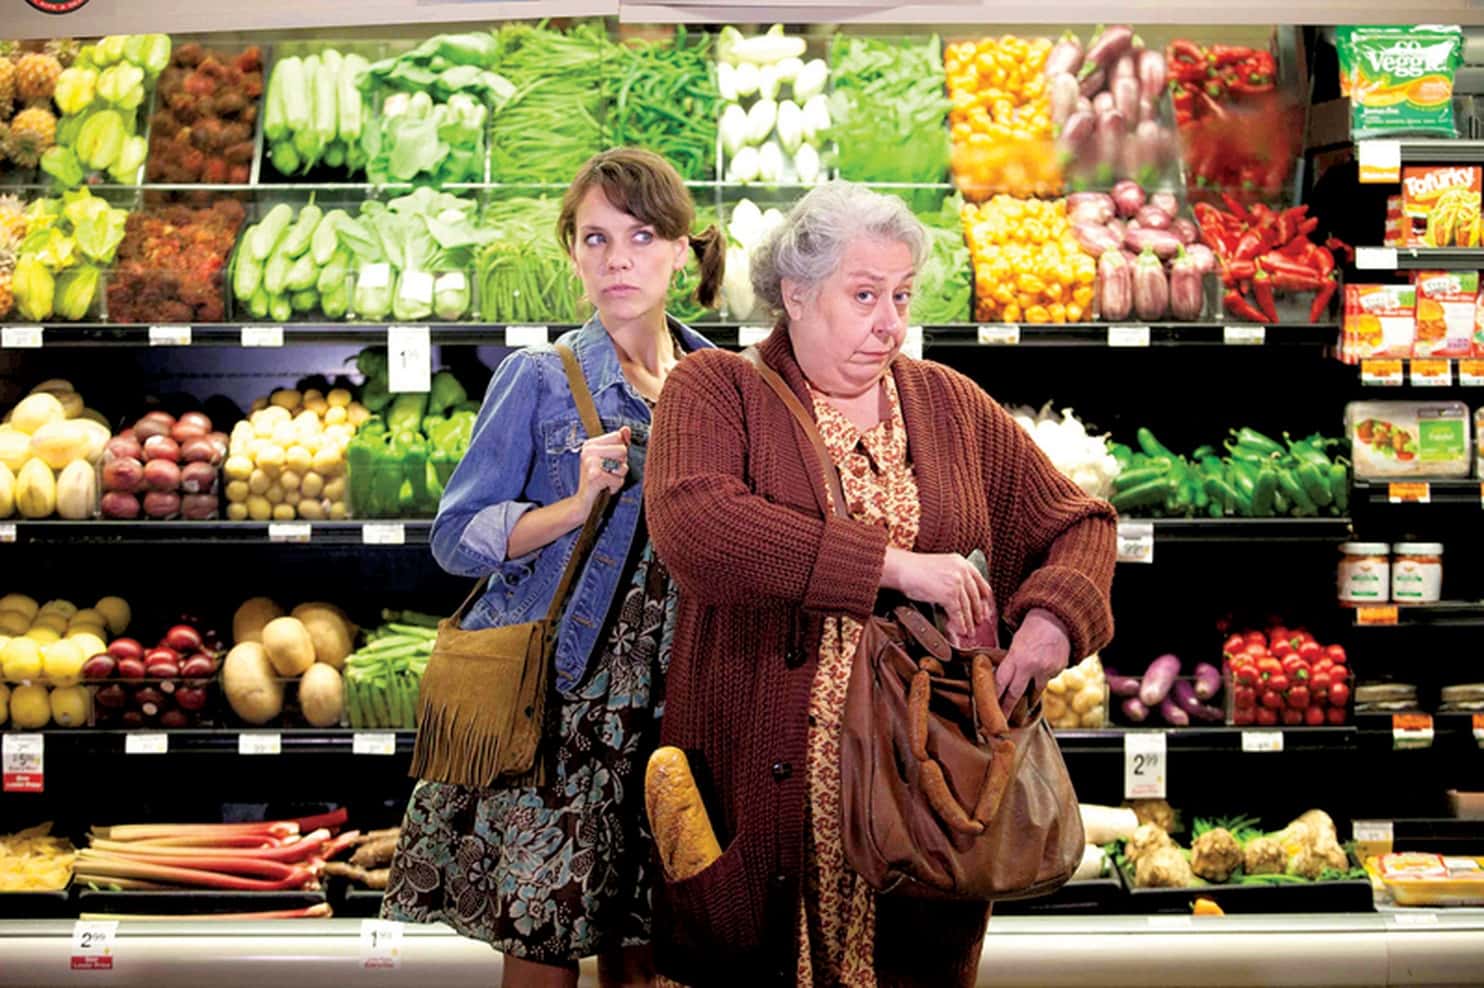 Кража продуктов из магазина. Пожилые люди в магазине. Женщина ворует в магазине. Кража продуктов питания. Кража продуктов в магазине.